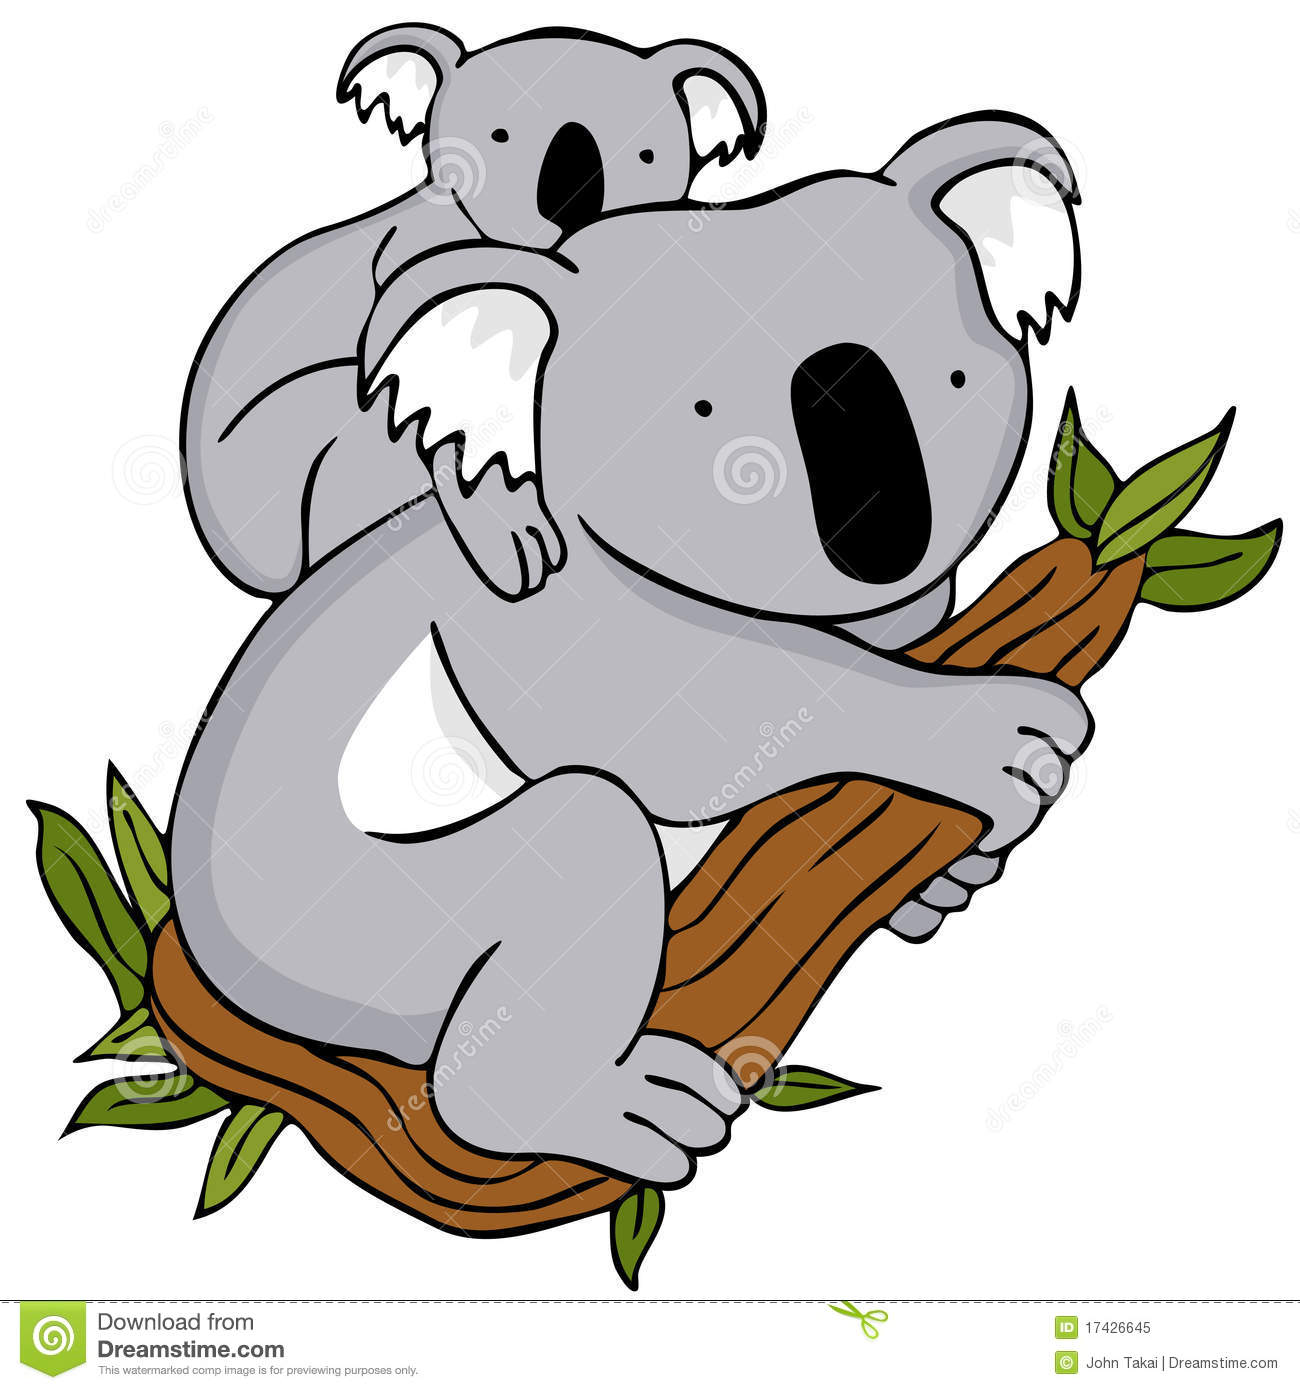 Free Cute Koala Clip Art u002